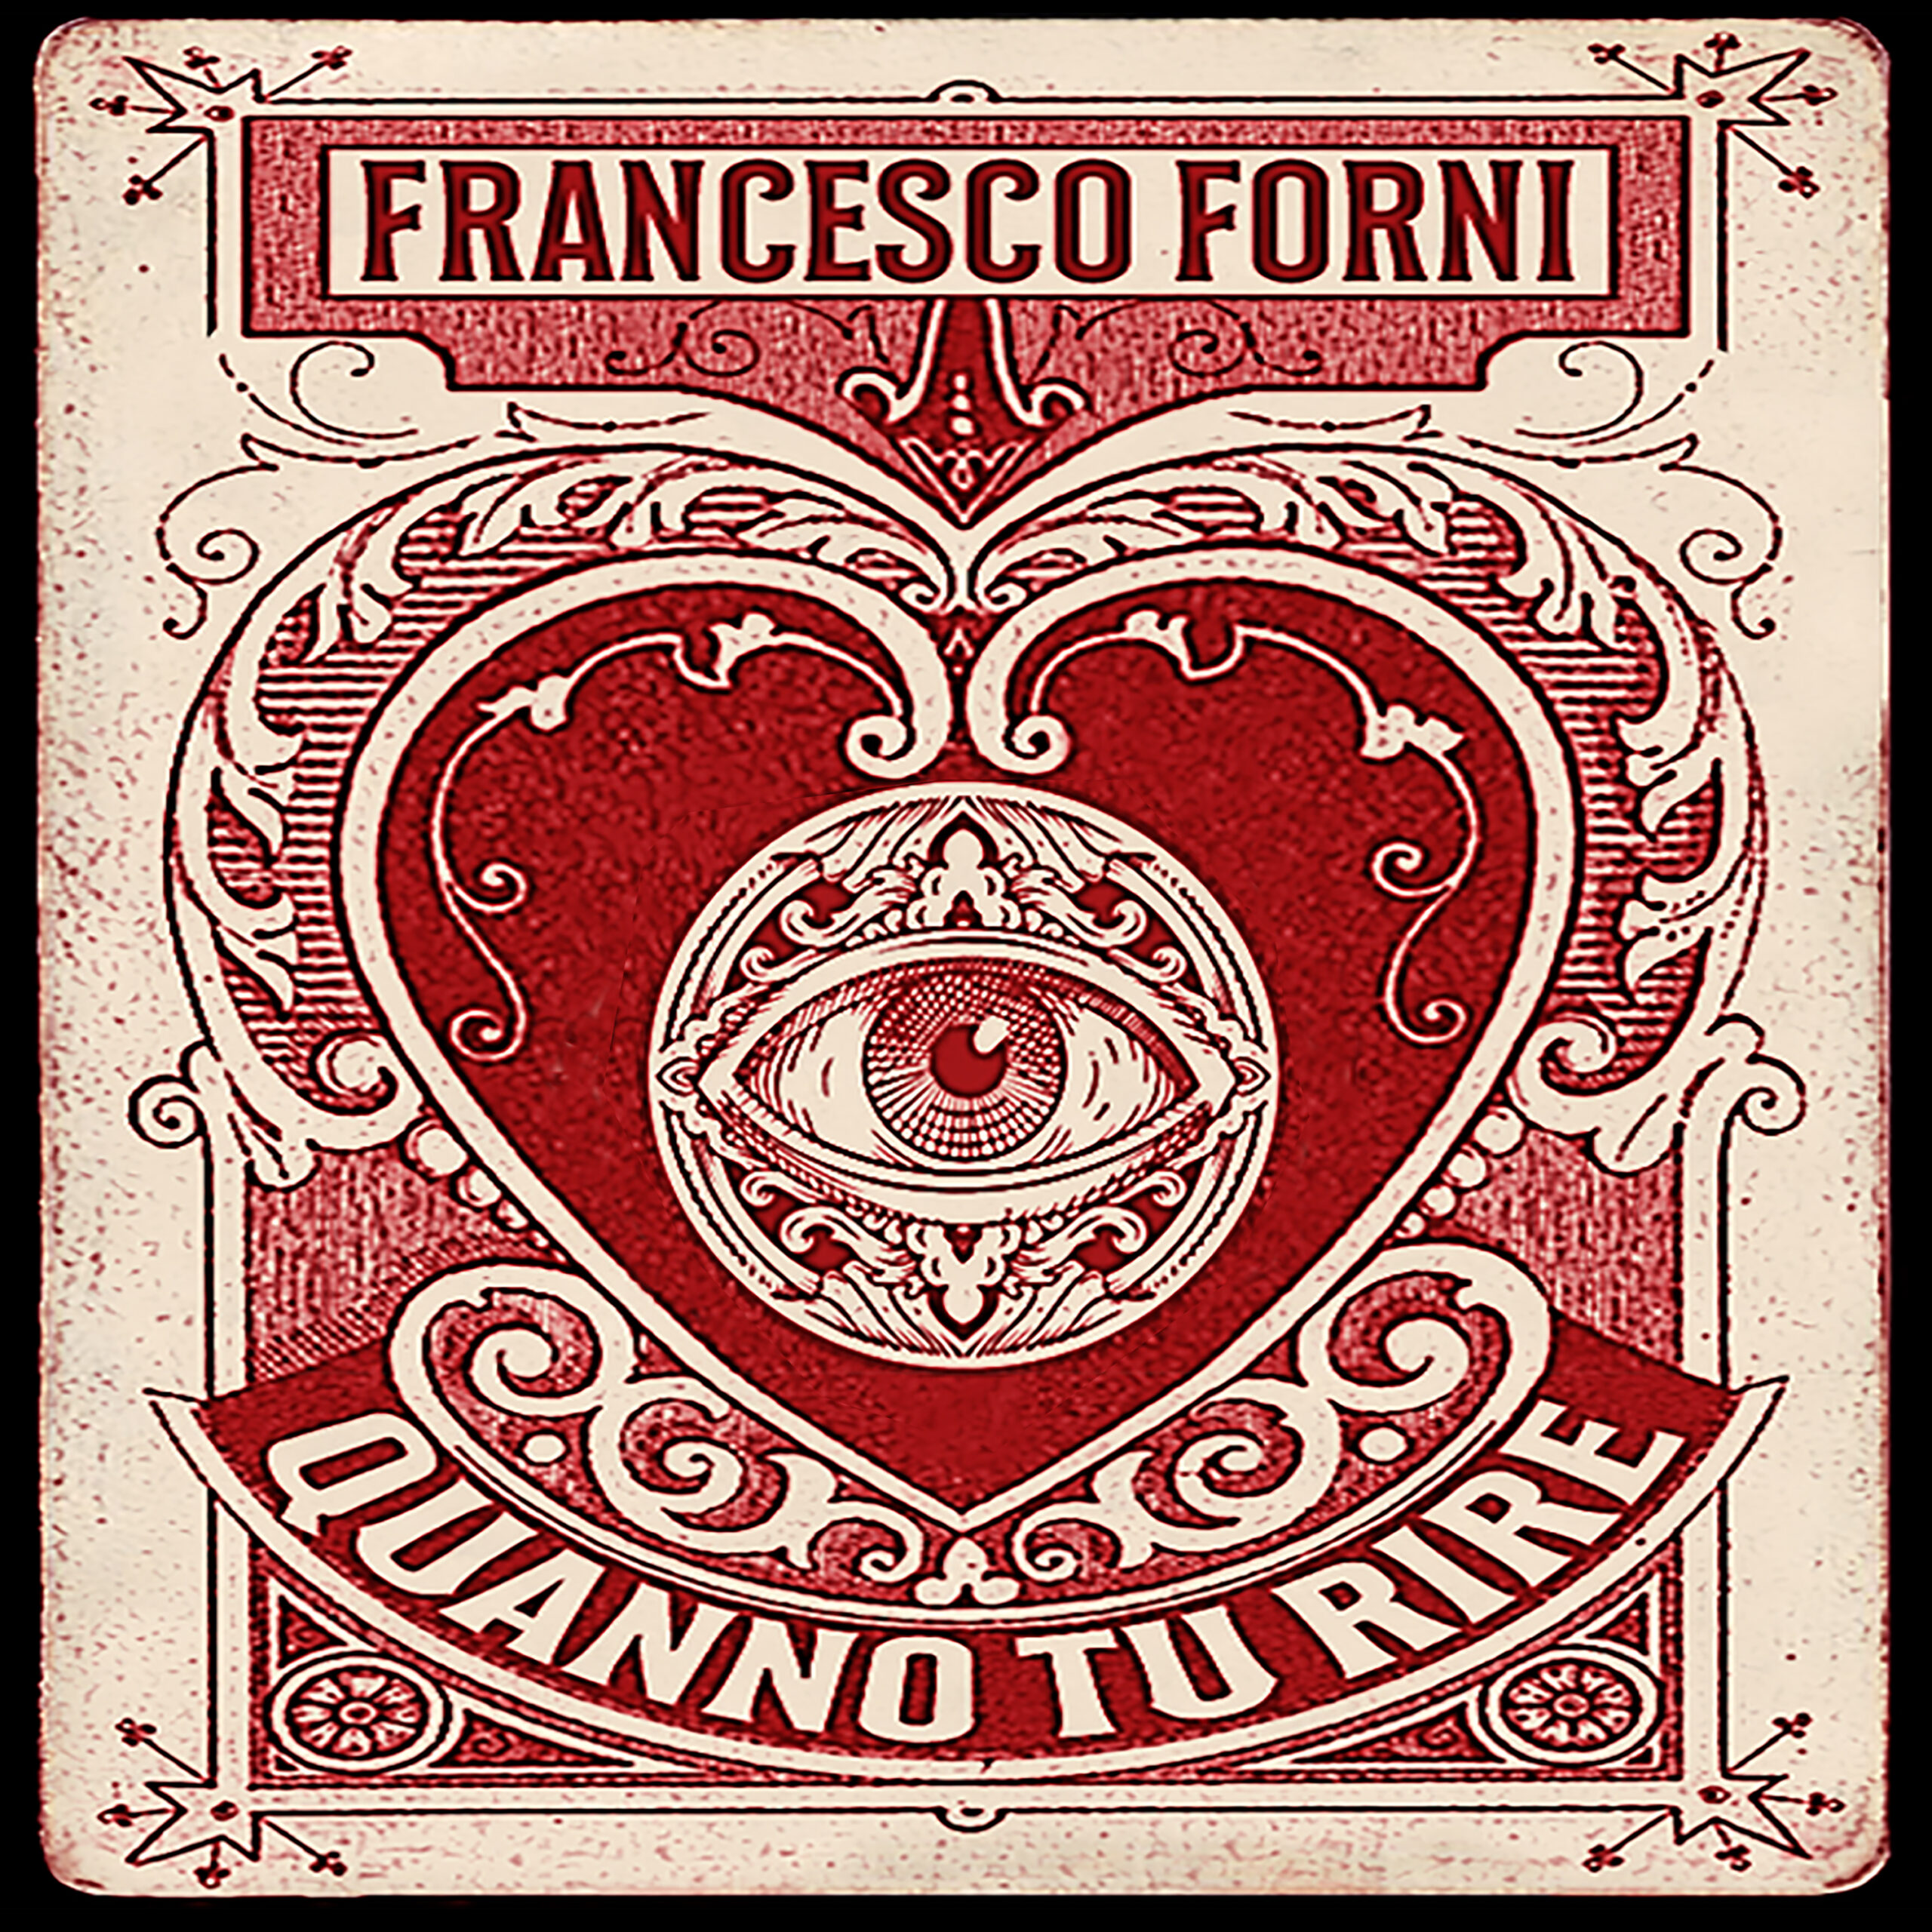 “Quanto tu dire”, la nuova canzone di Francesco Forni